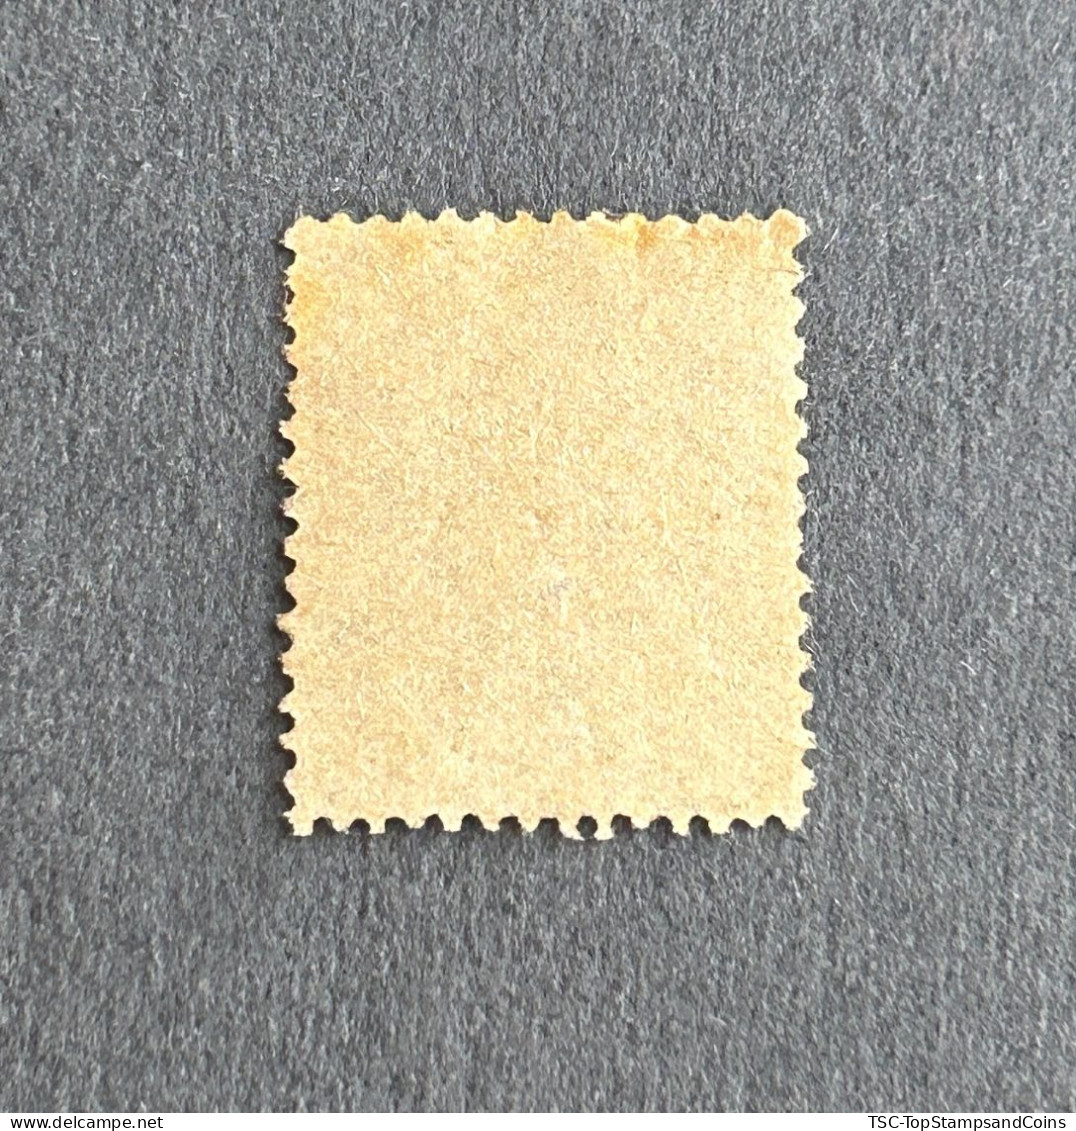 FRA0130U97 - Type Semeuse Lignée - 15 C Olive Used Stamp - Type V - 1917-20 - France YT 130d - 1903-60 Semeuse Lignée